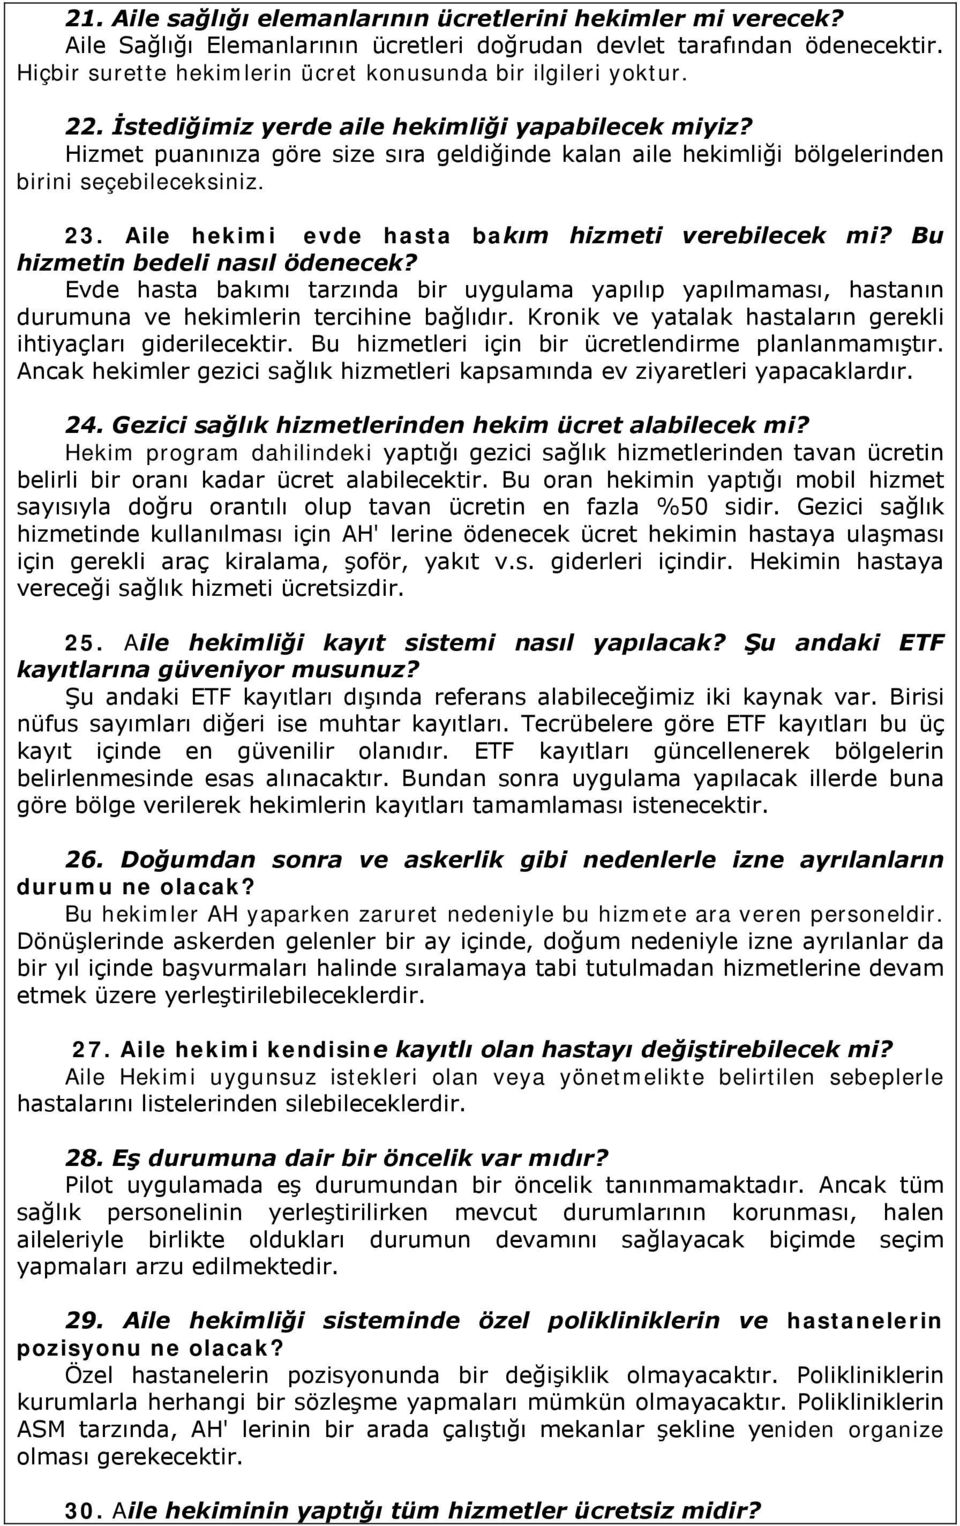 150 soruda aile hekimligi 1 turkiye de aile hekimligi pilot uygulamasi ne zaman baslamistir pdf ucretsiz indirin